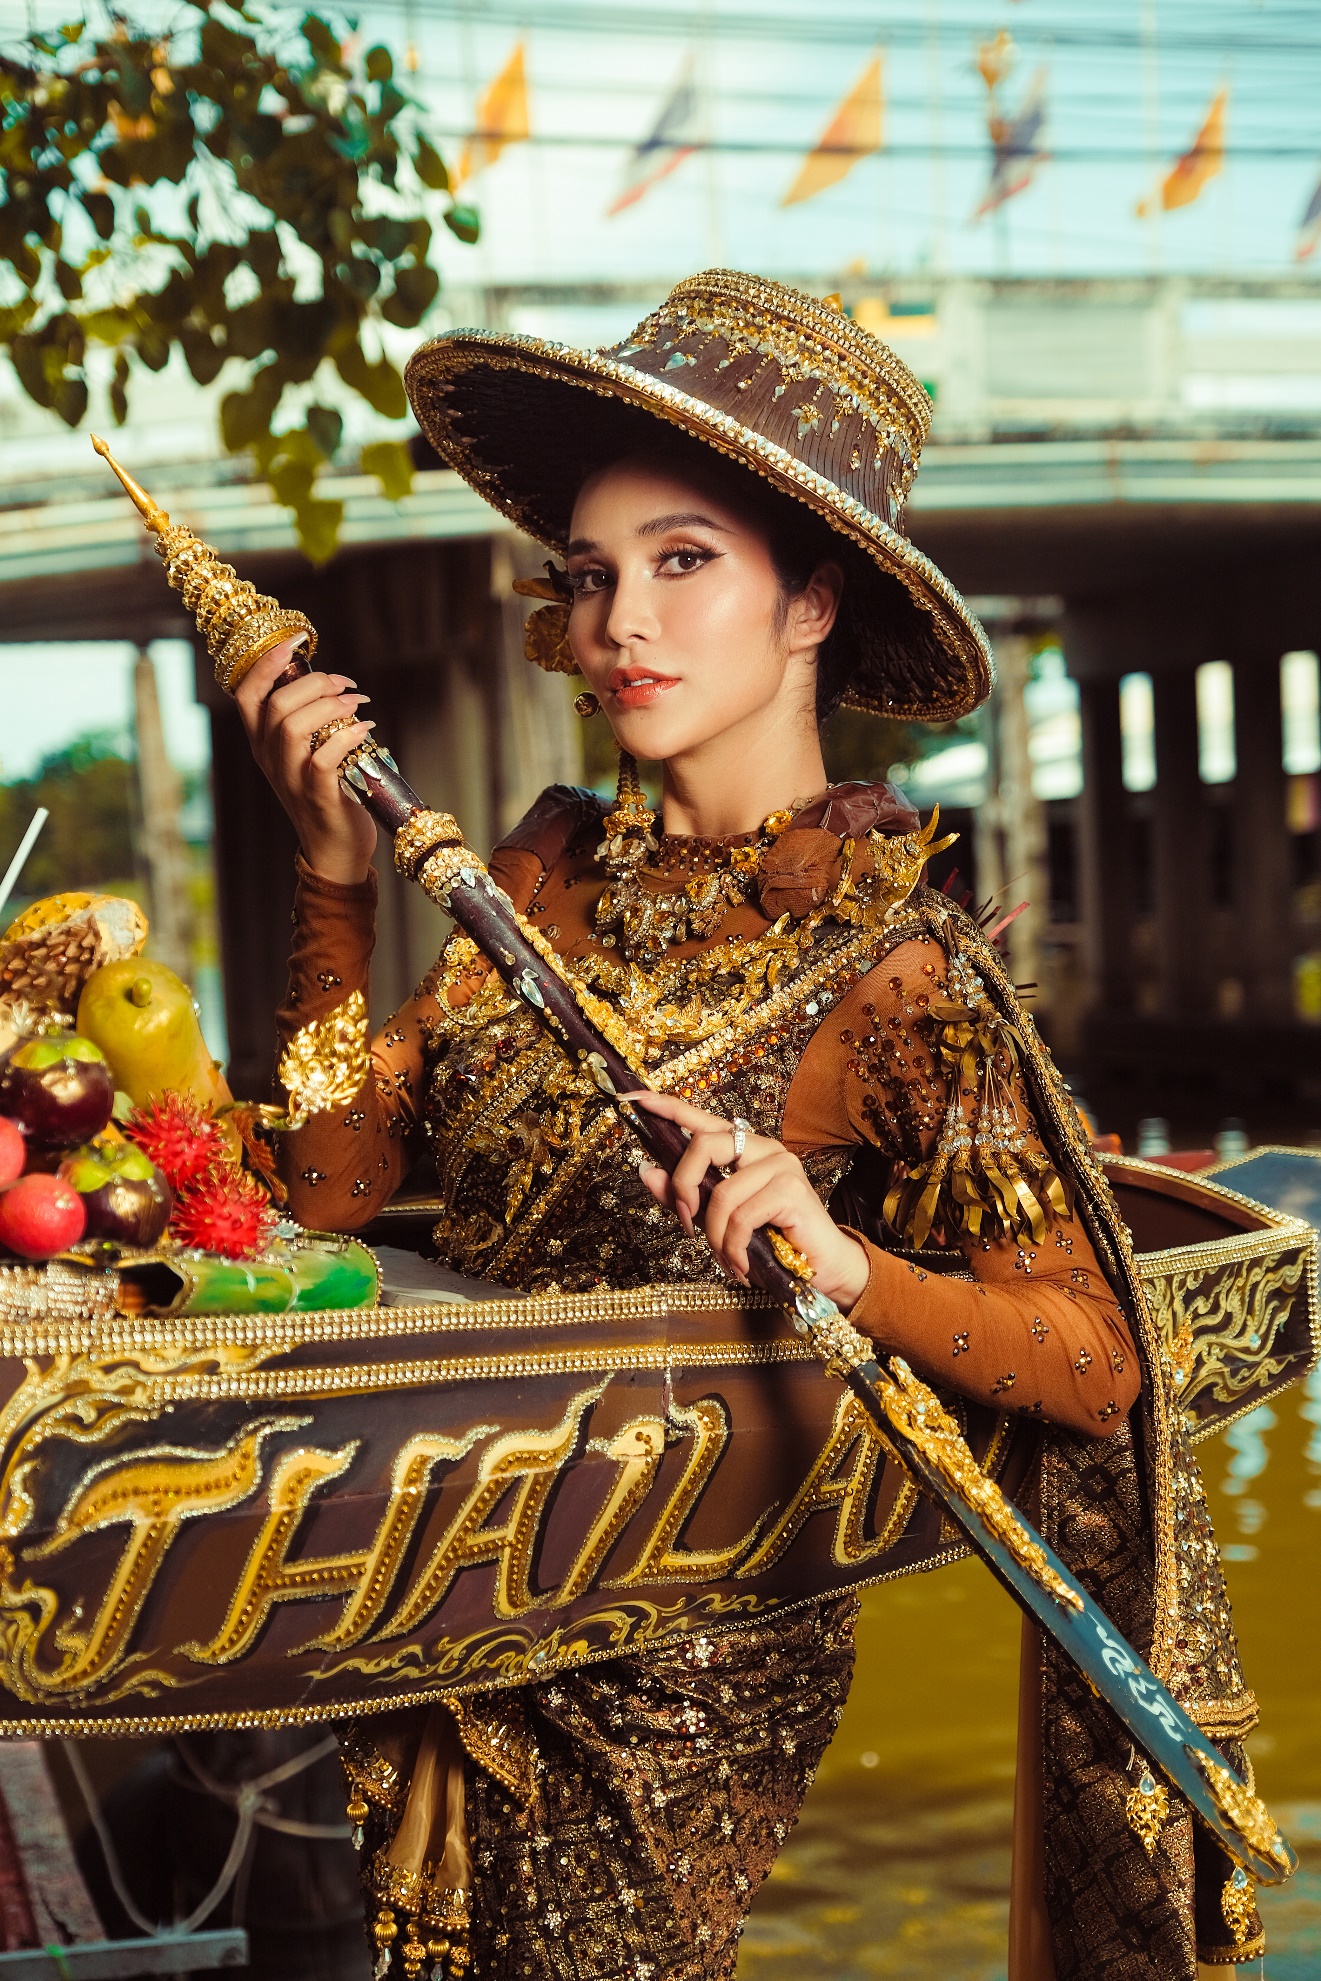 CEO Hương Nam Production House gây sốt cộng đồng mạng với bộ ảnh “National costume” Thái Lan - Ảnh 7.